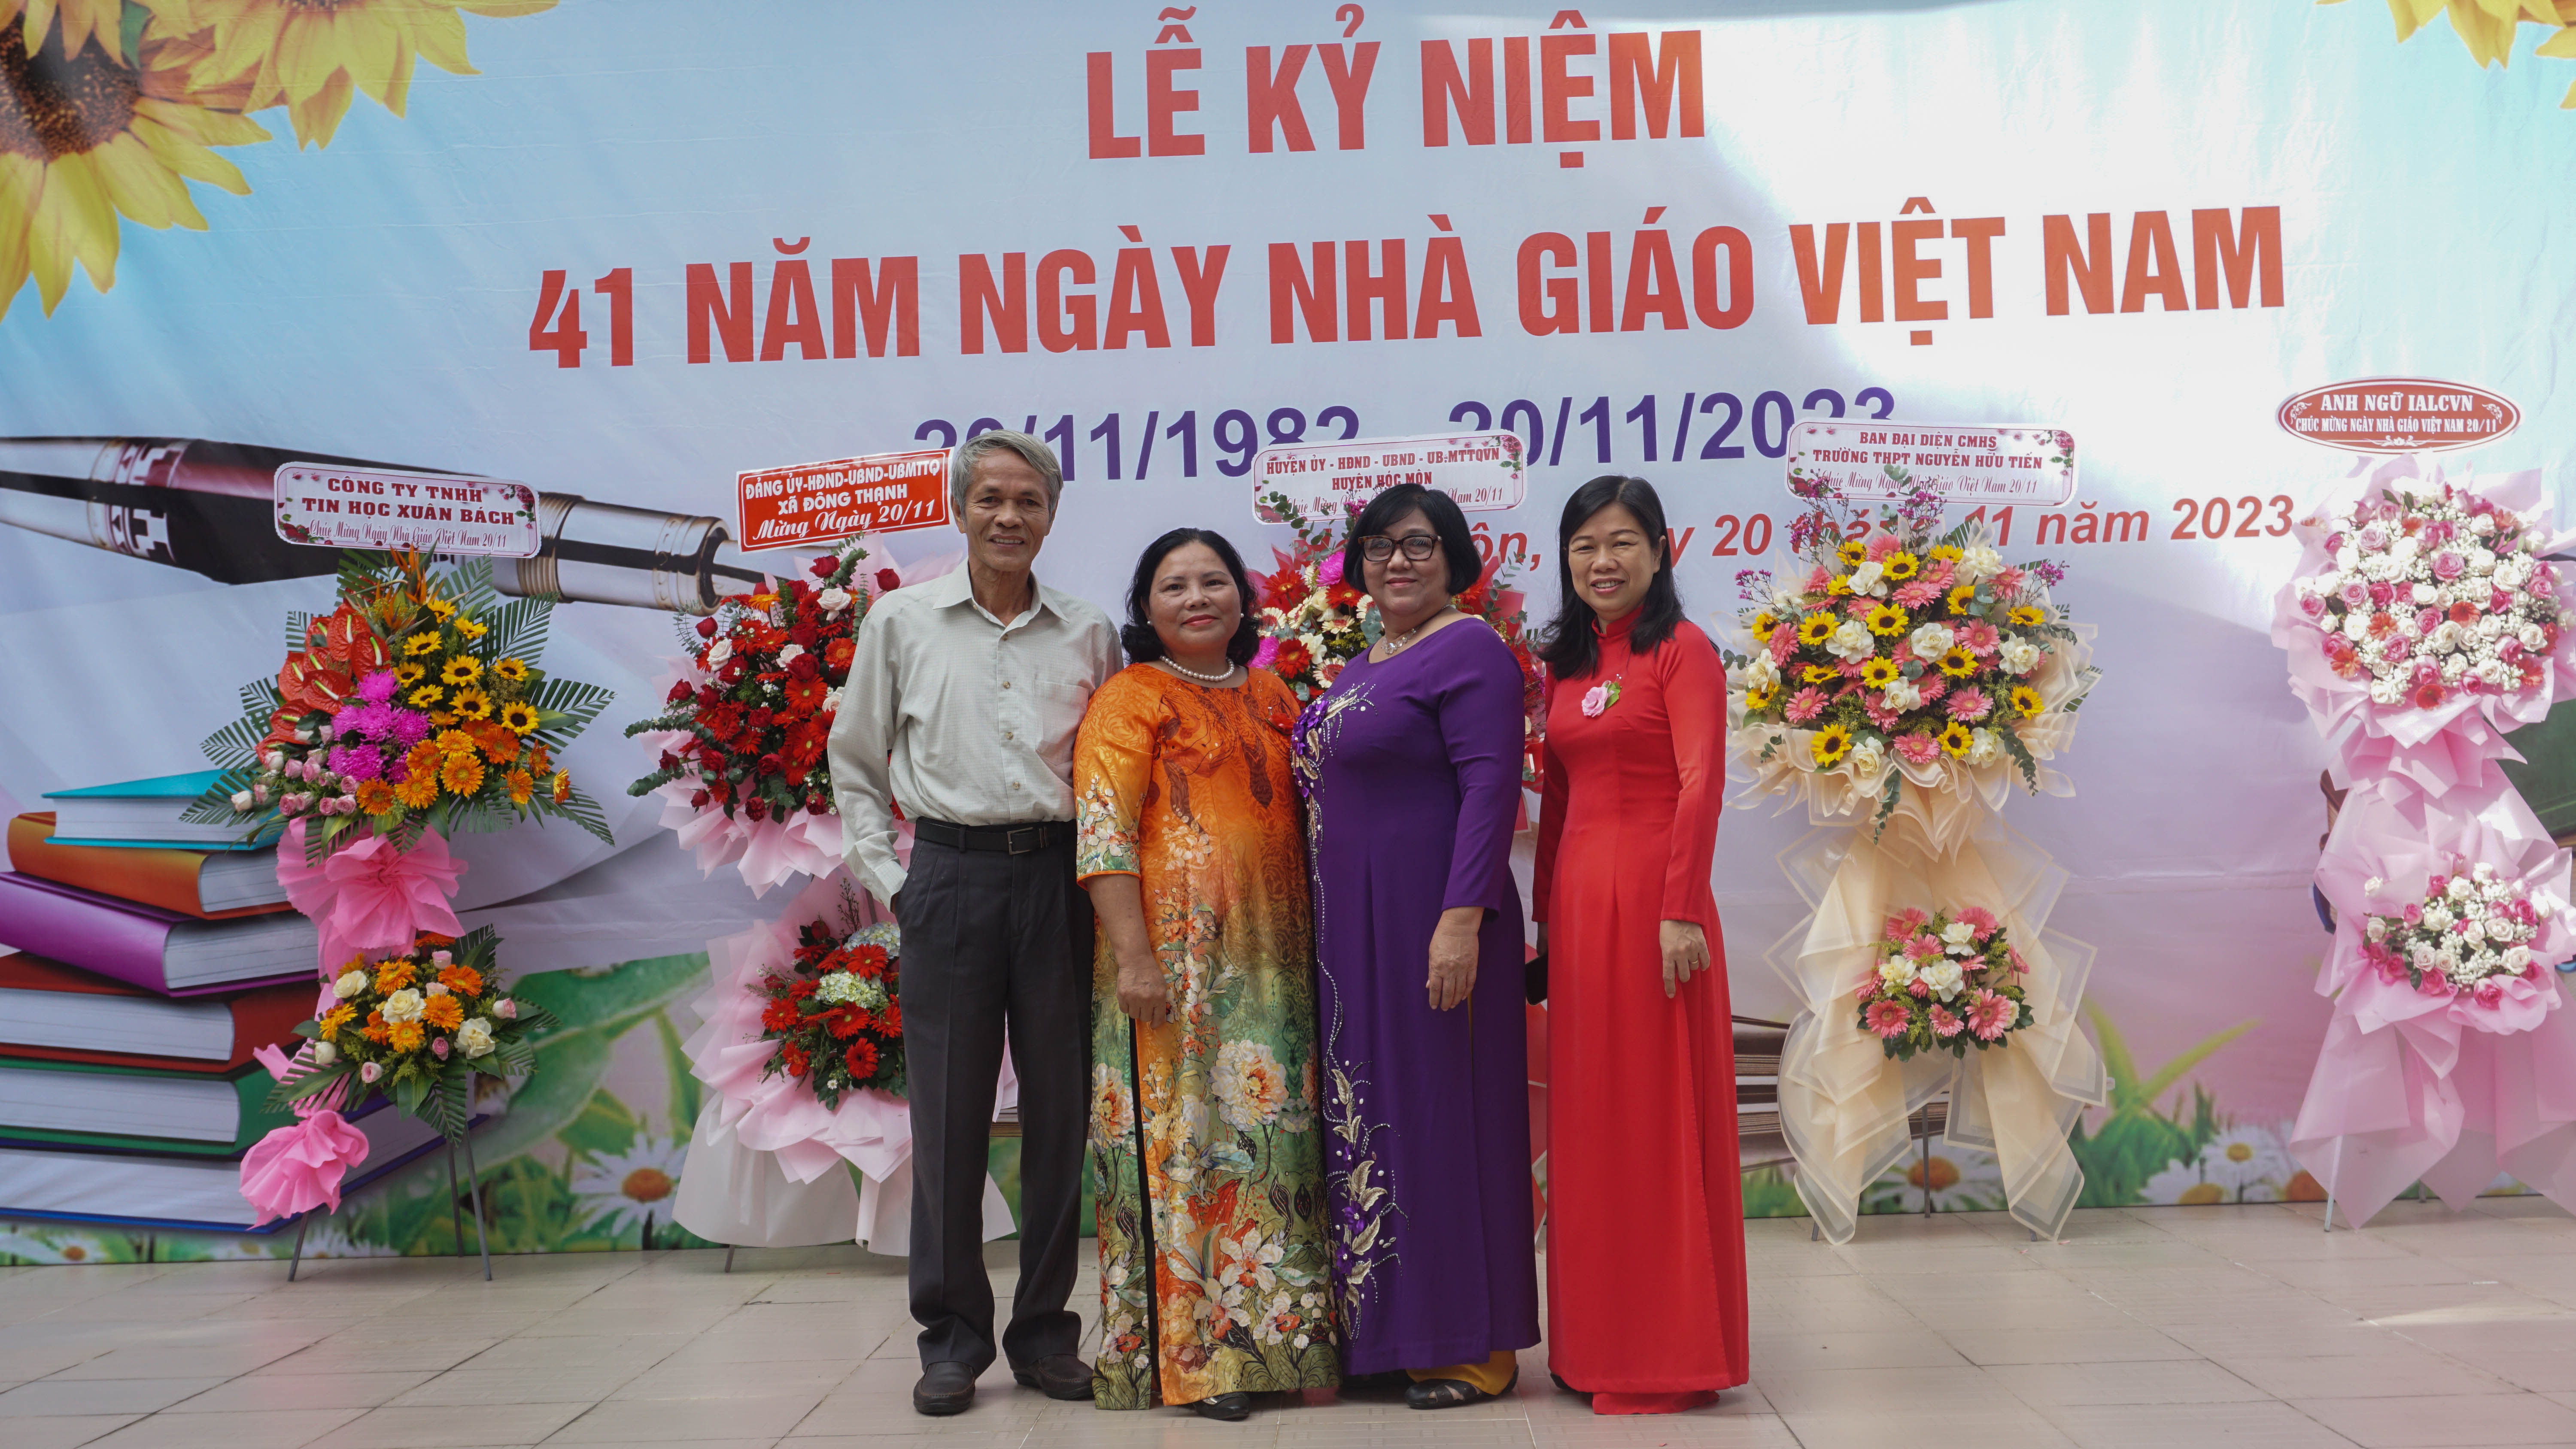 Lễ kỷ niệm 41 năm Ngày Nhà giáo Việt Nam (20/11/1982 - 20/11/2023)